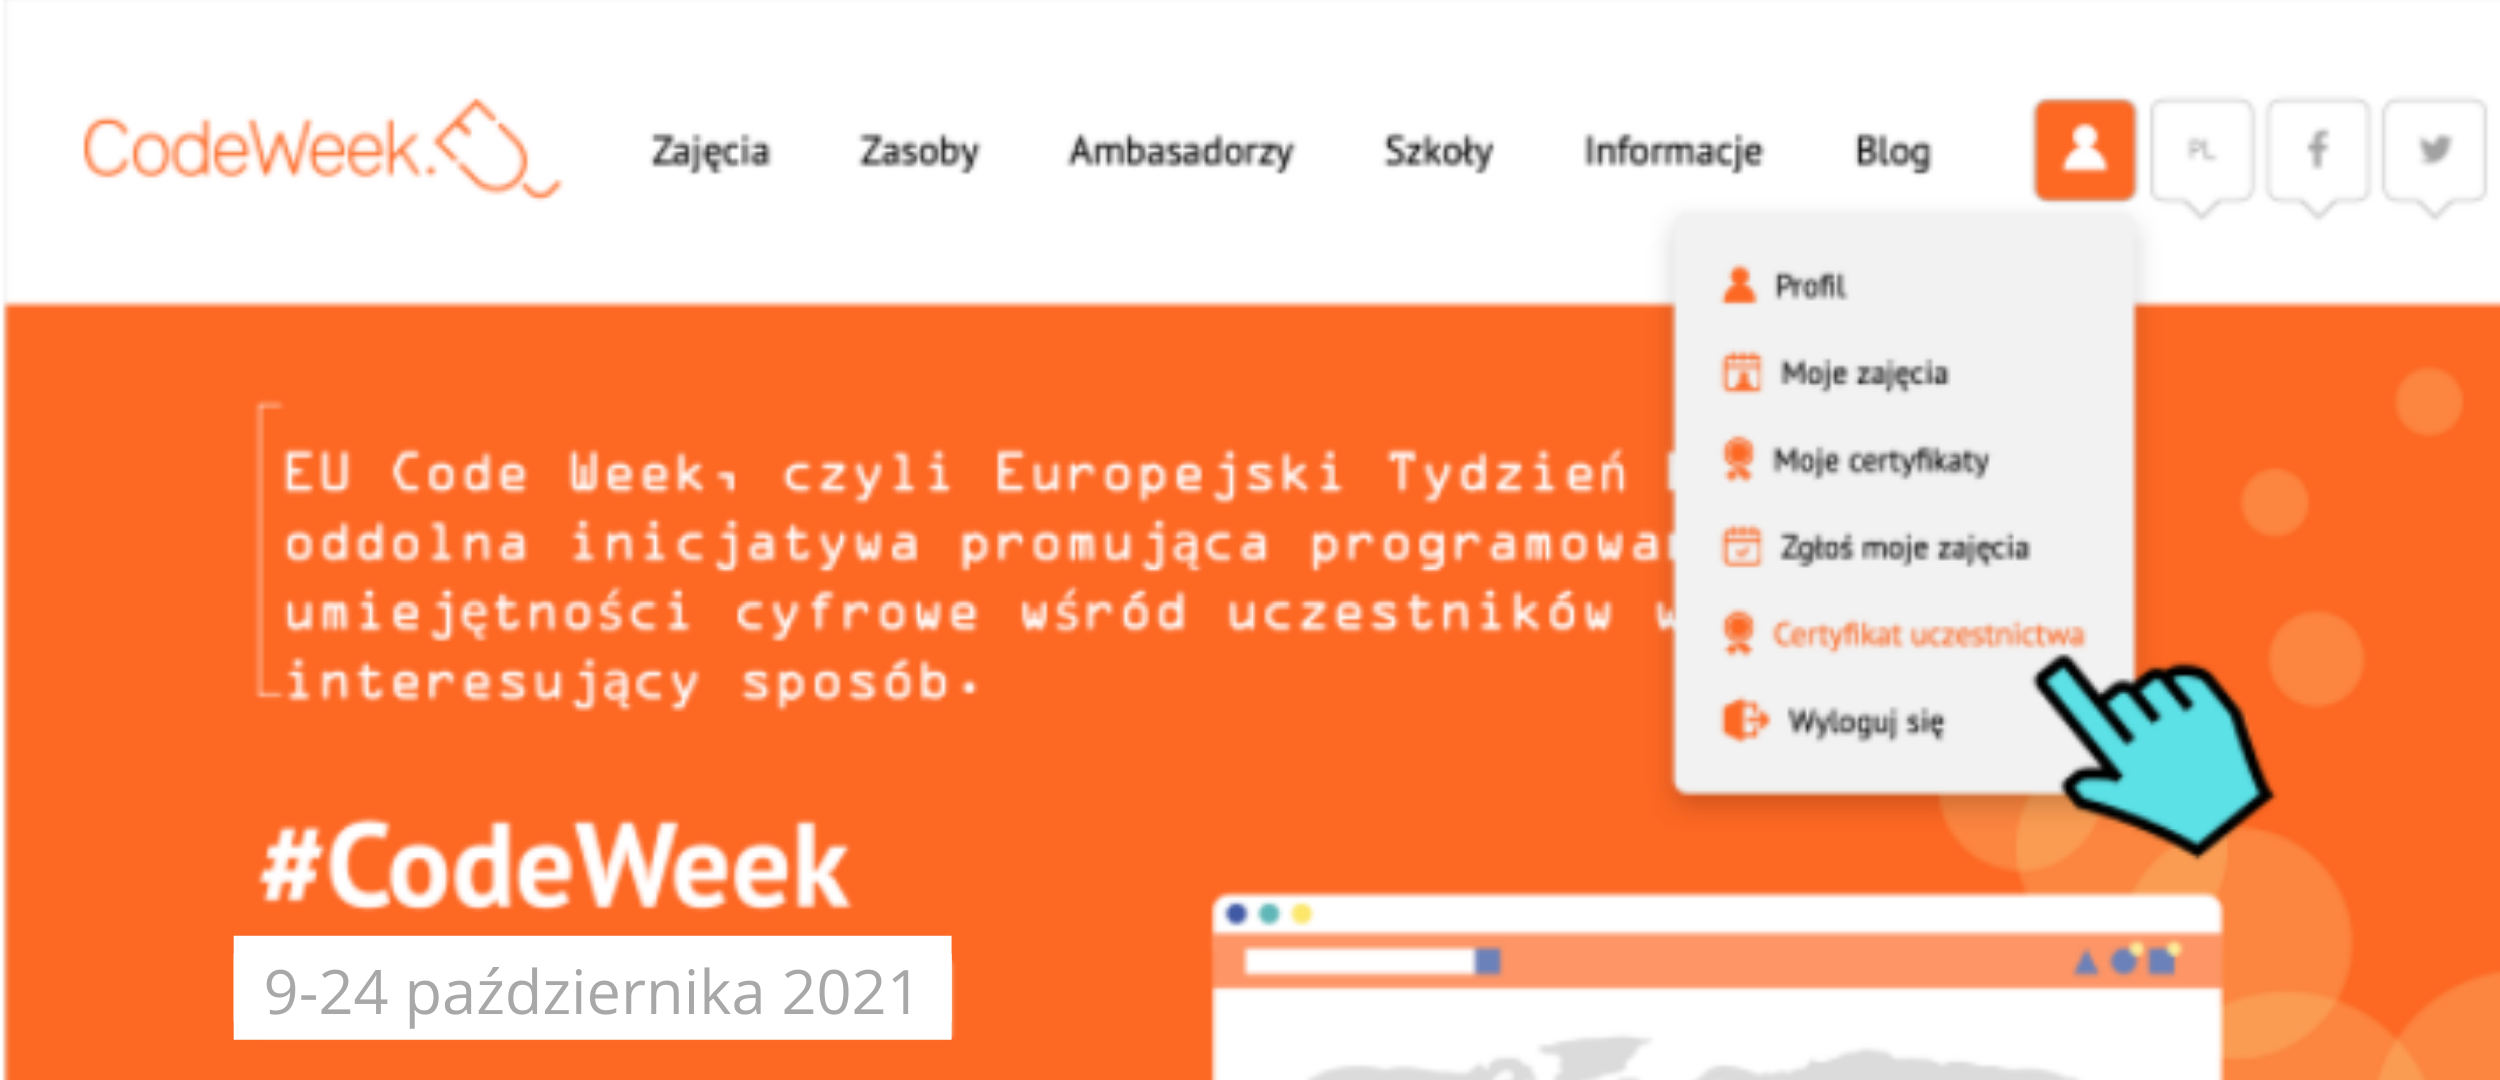 Grafika przedstawia stronę codeweek.eu z rozwiniętym menu opcji. Podświetlona na pomarańczowo jest zakładka “Certyfikat uczestnictwa”. Wskazuje na nią niebieski symbol kursora myszy.